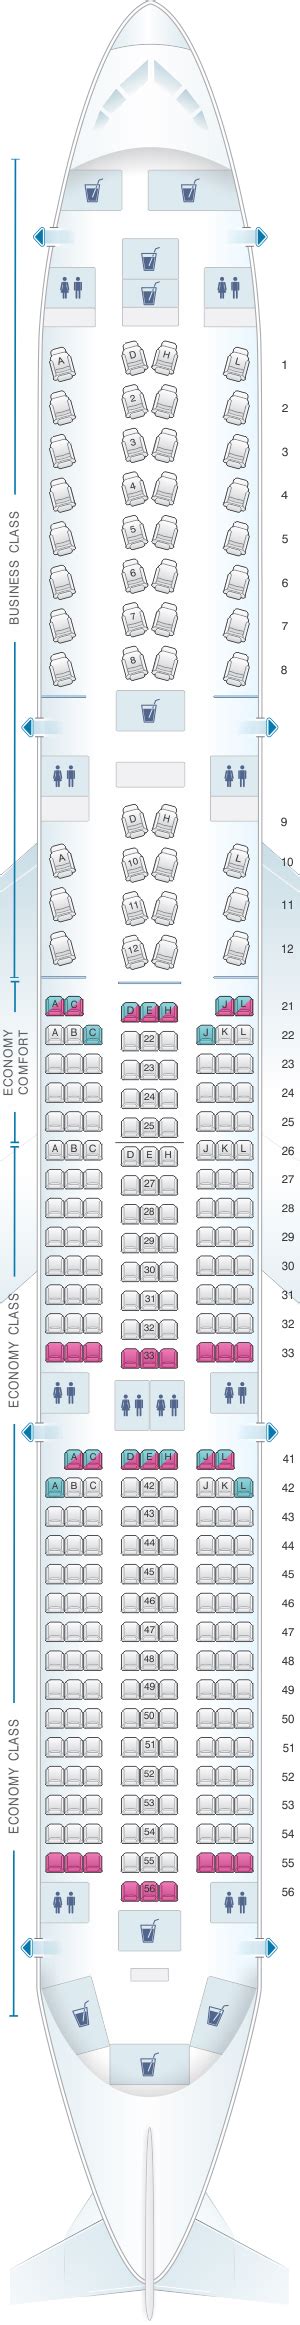 Seat Map Finnair Airbus A350 900 Config1 Seatmaestro